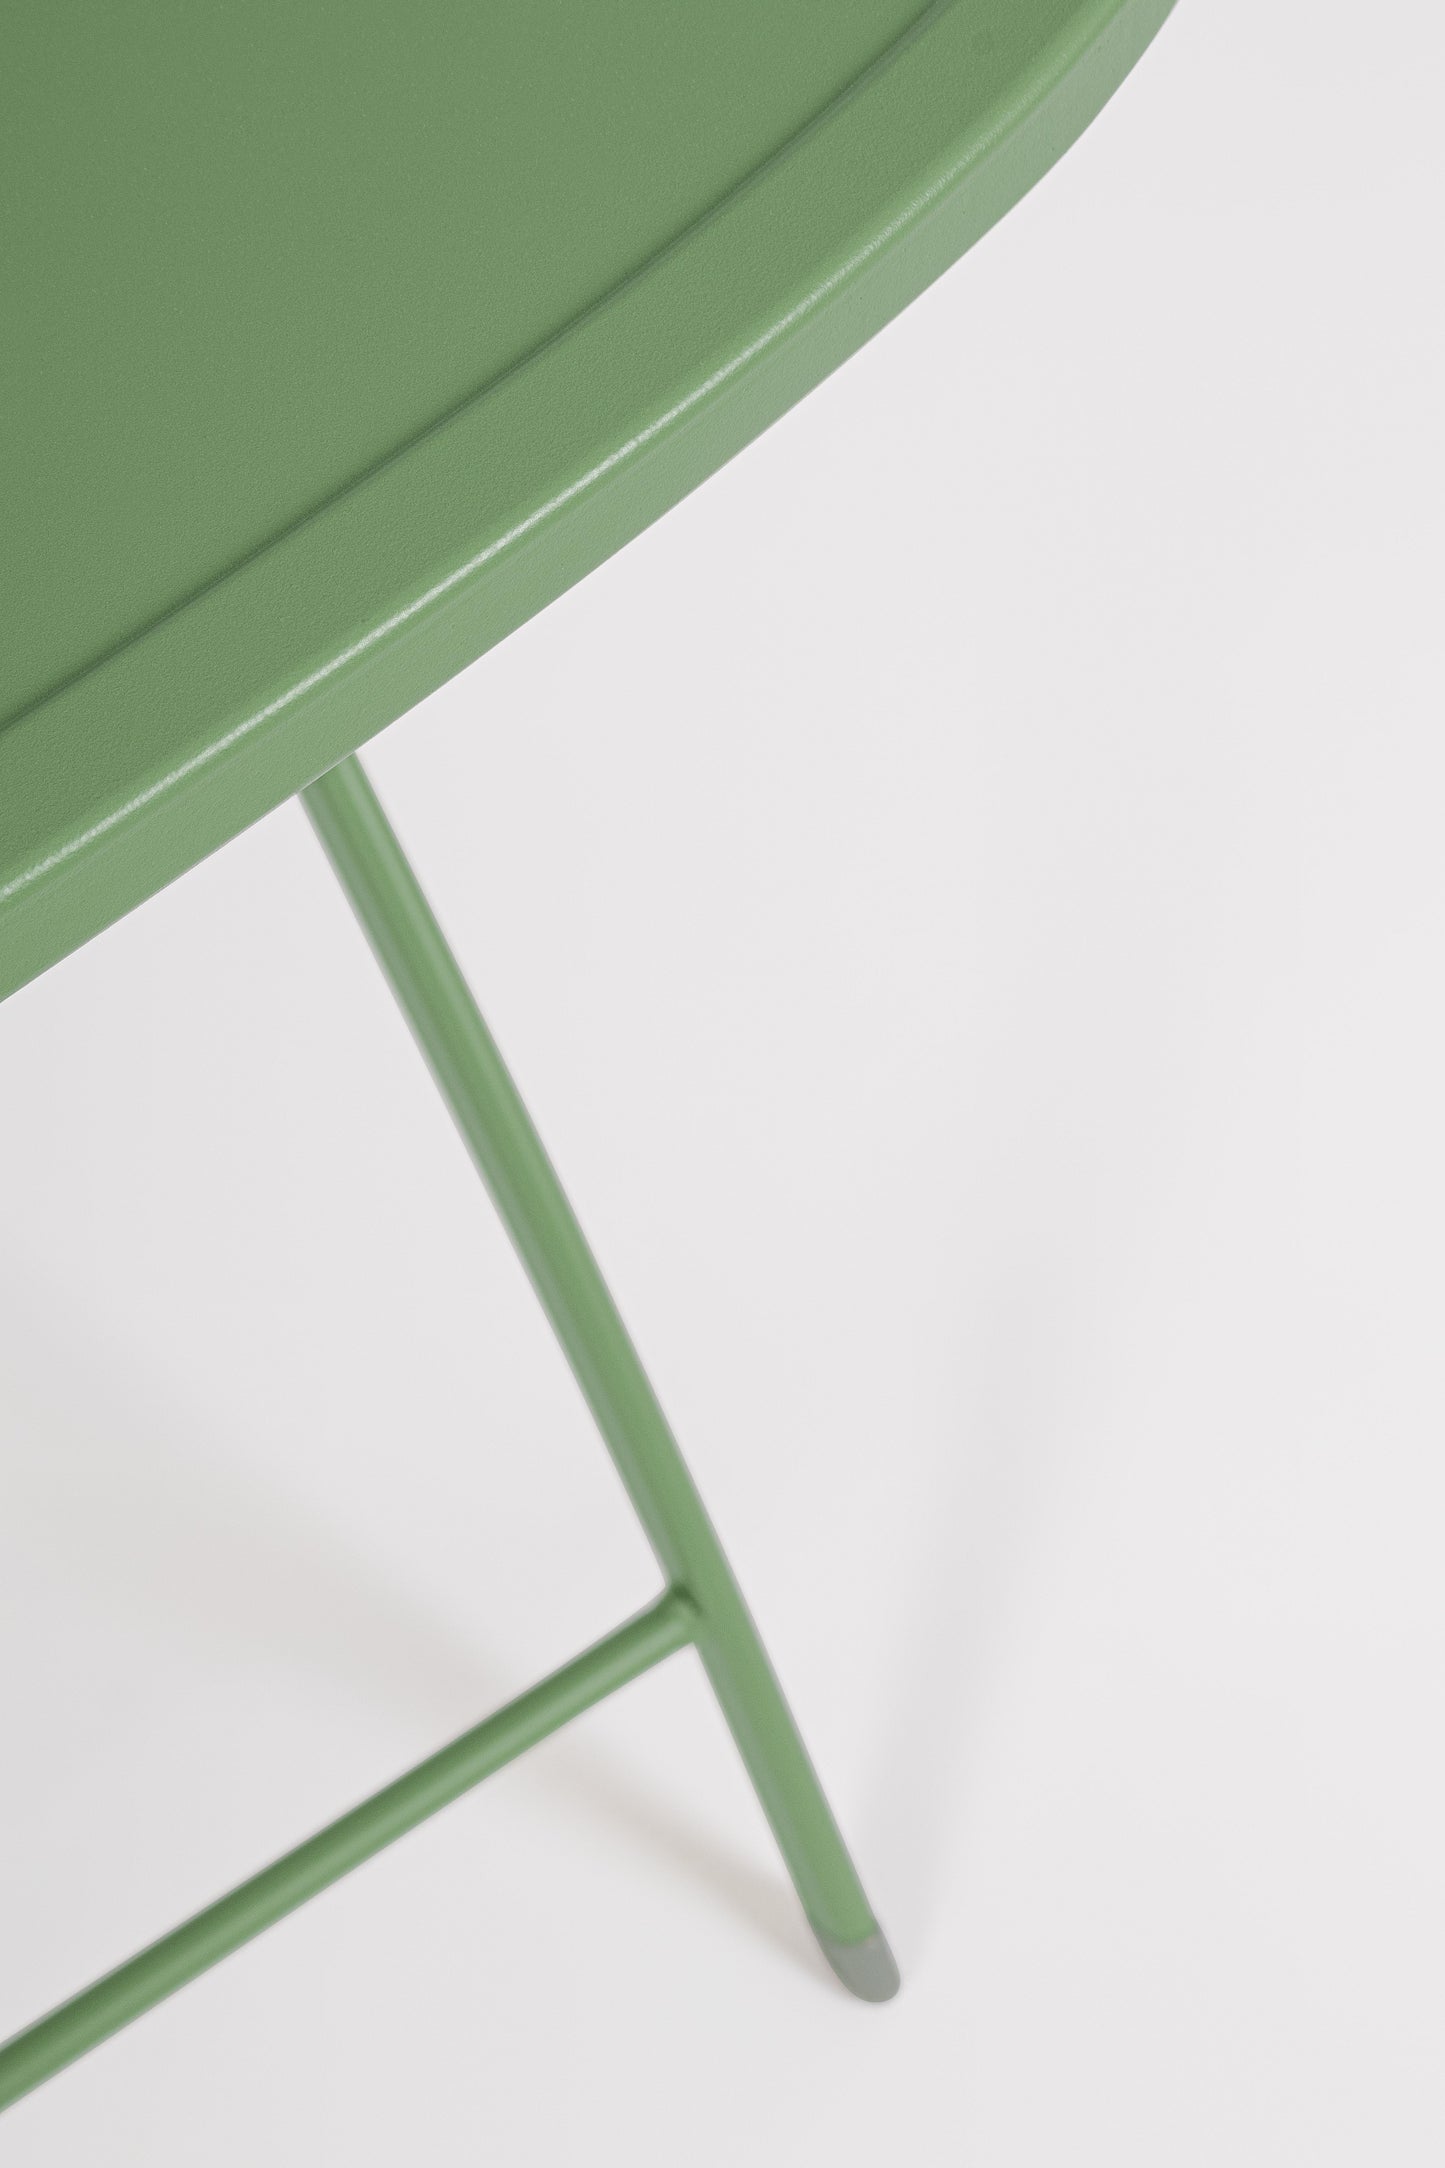 Set bistrot da esterno pieghevole tavolo e 2 sedie in acciaio verniciato diversi colori